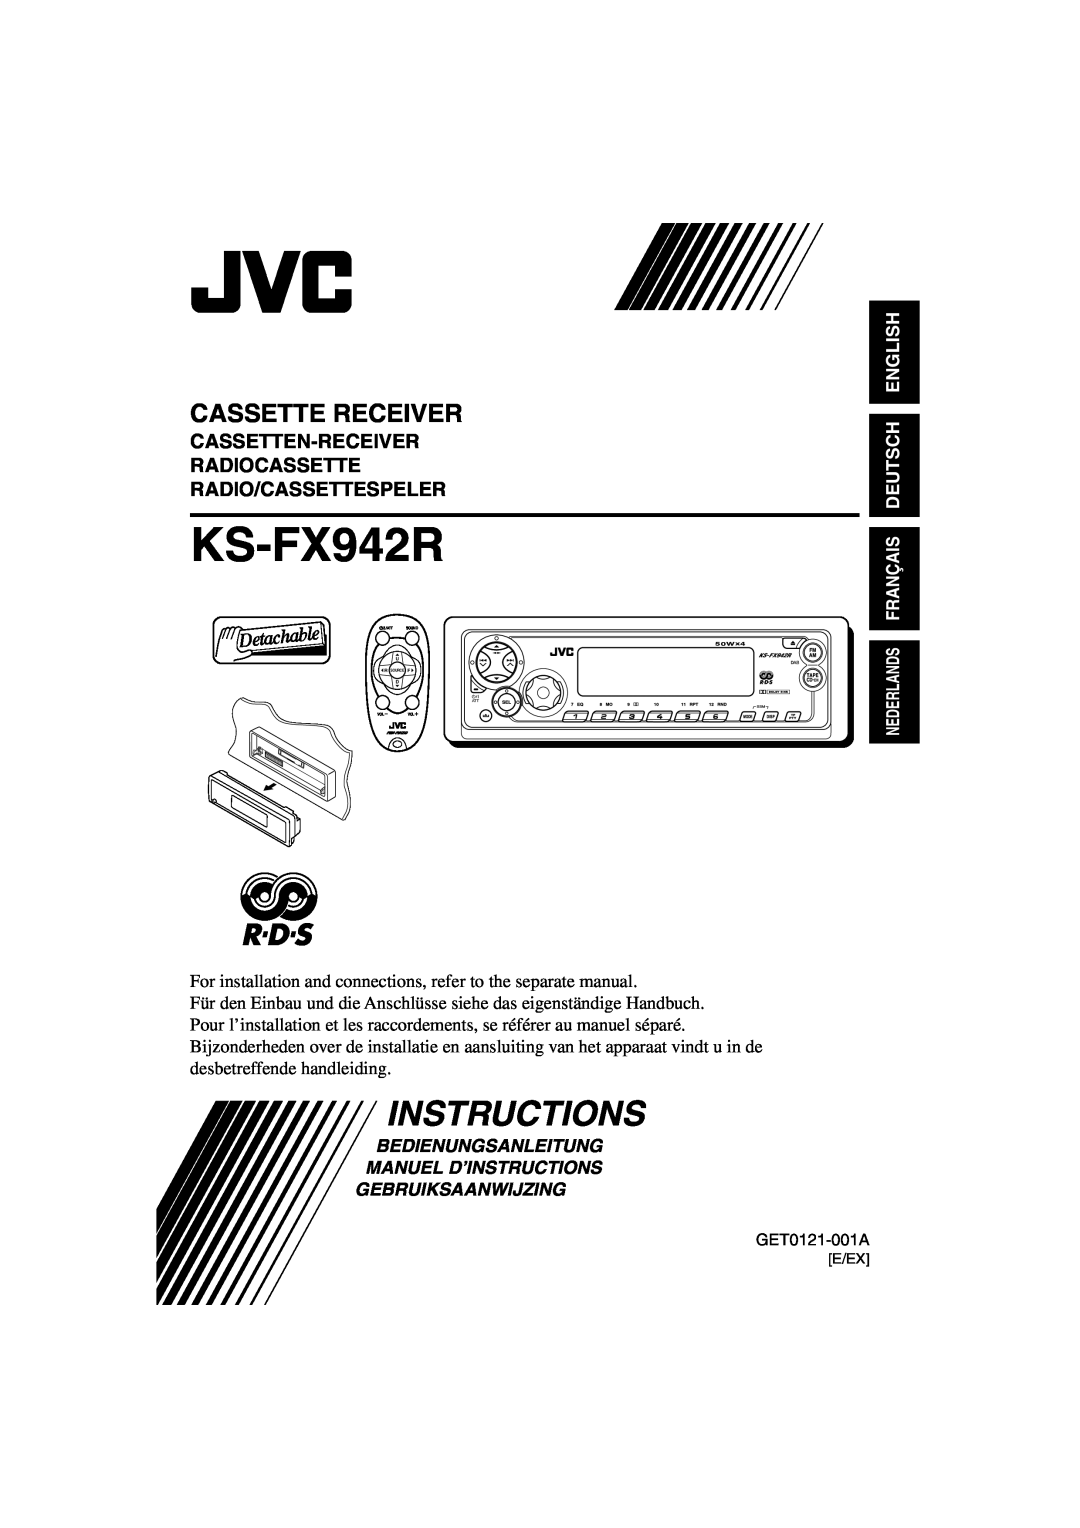 JVC KS-FX942R manual Cassette Receiver, English Deutsch, Bedienungsanleitung Manuel D’Instructions, Gebruiksaanwijzing 